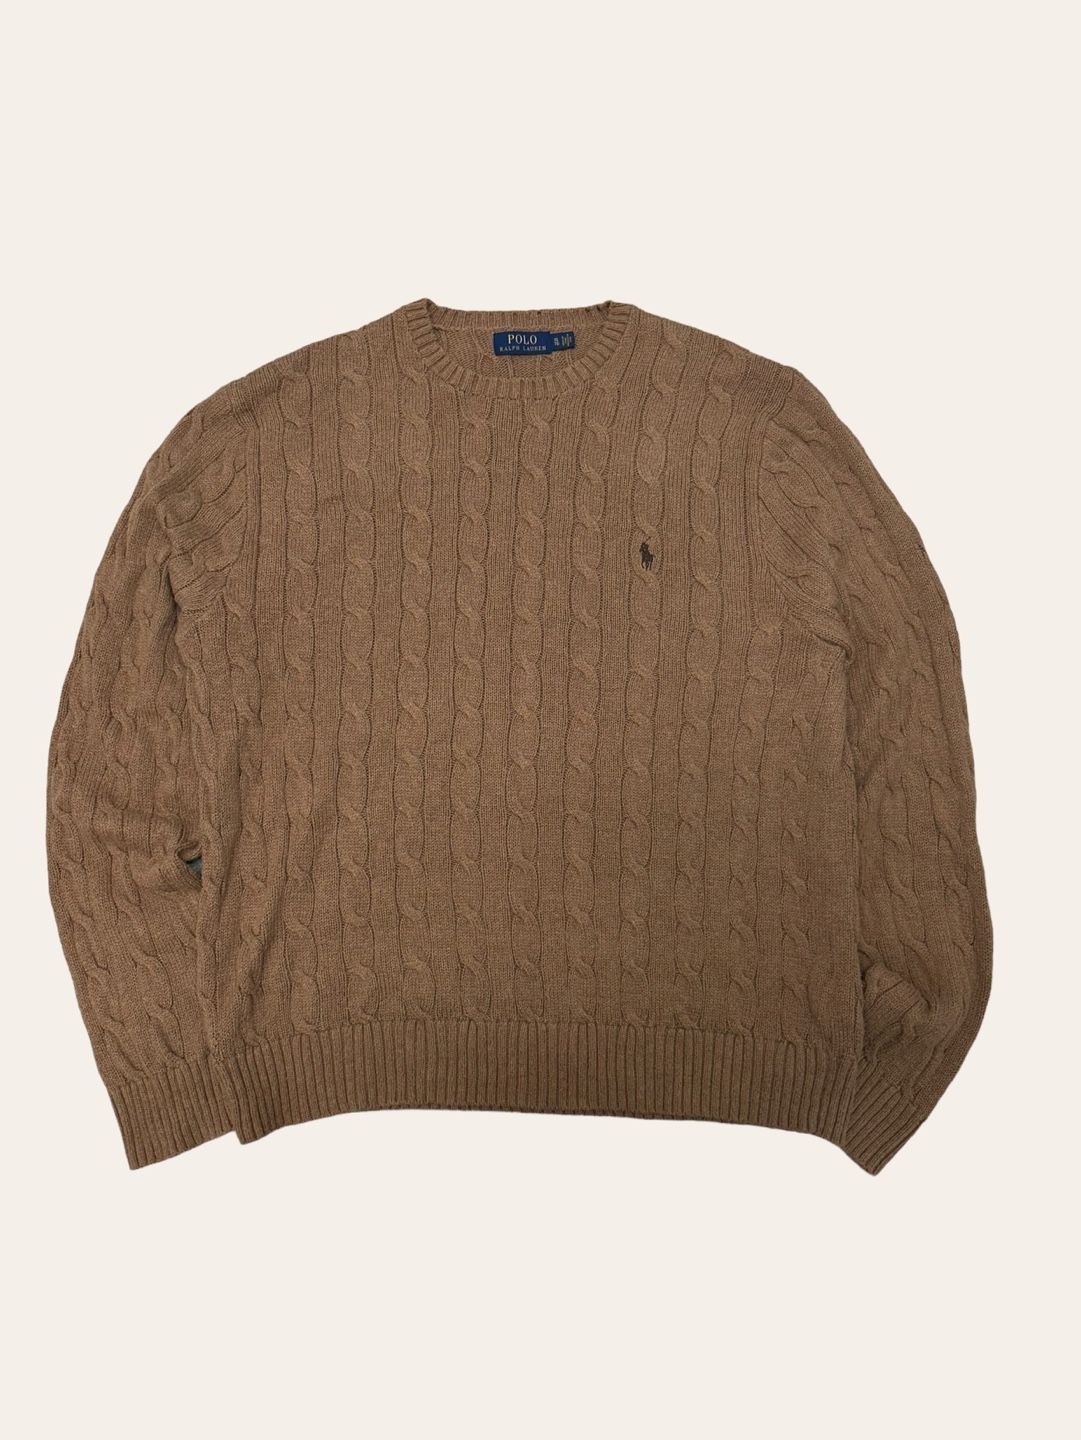 Polo ralph lauren camel color cotton cable sweater XL